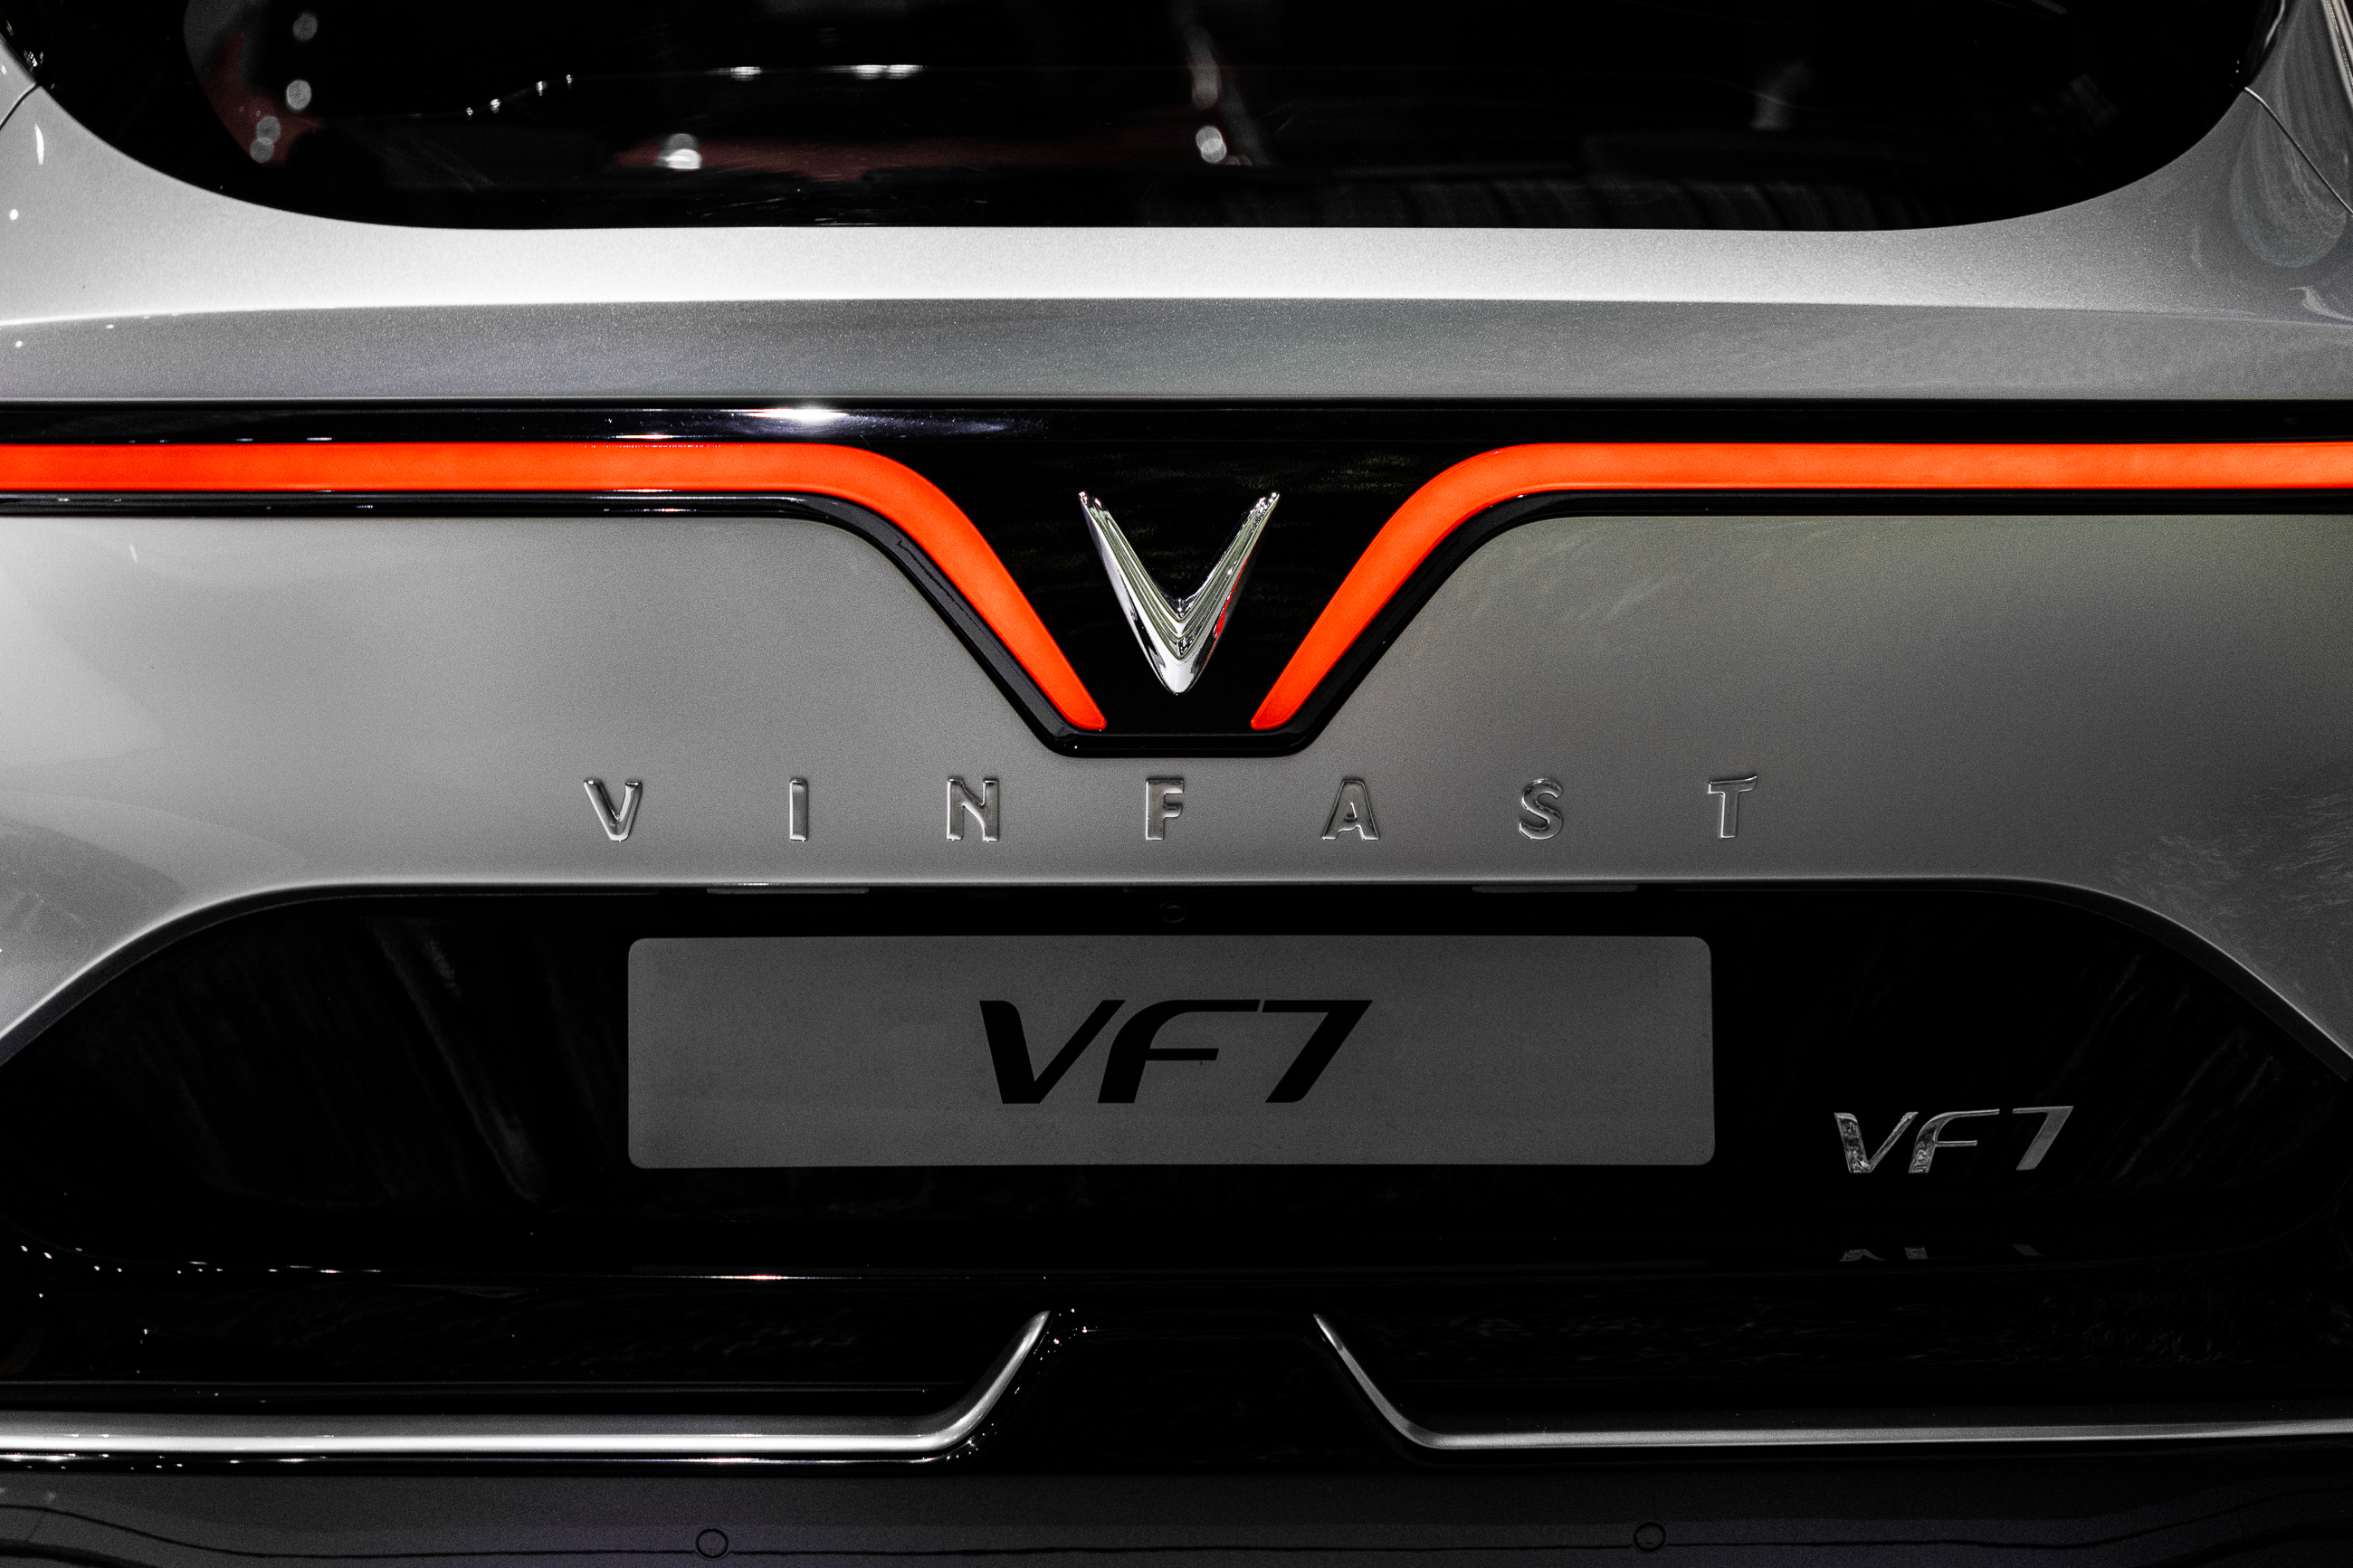 VinFast VF7 khi nào được mở bán? 6n9a7206.jpg